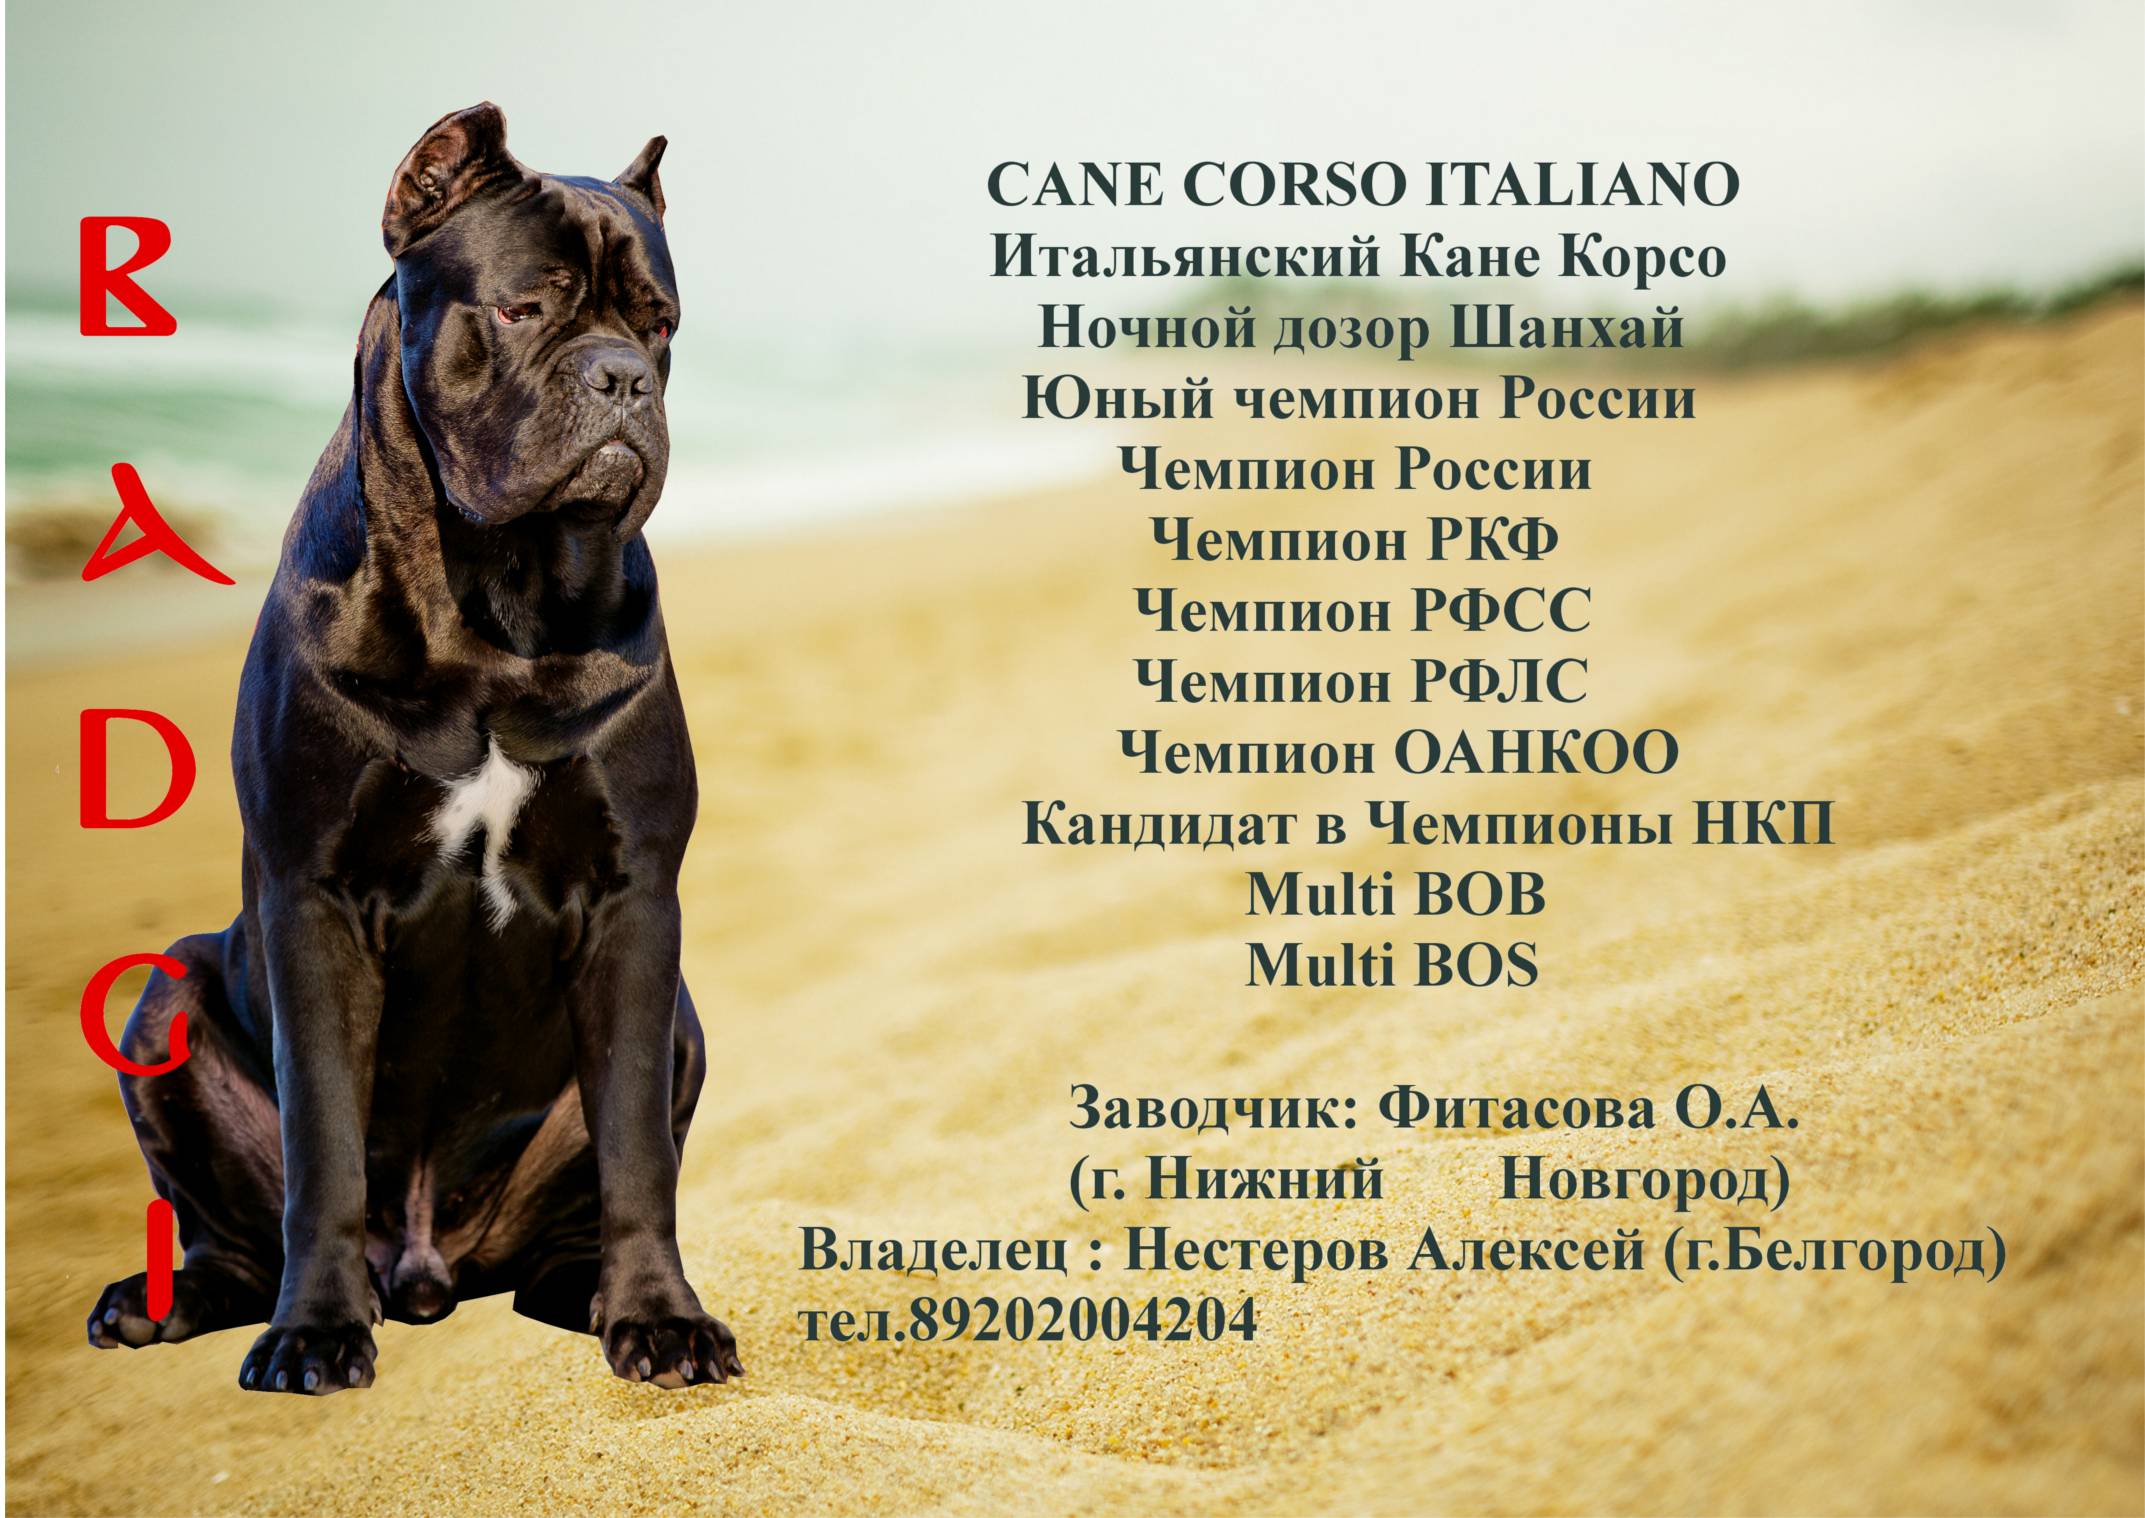 Кане корсо: описание стандарта породы собак с фото, характеристика итальяно, питомники, отрицательные отзывы владельцев и сколько стоит щенок итальянского мастифа